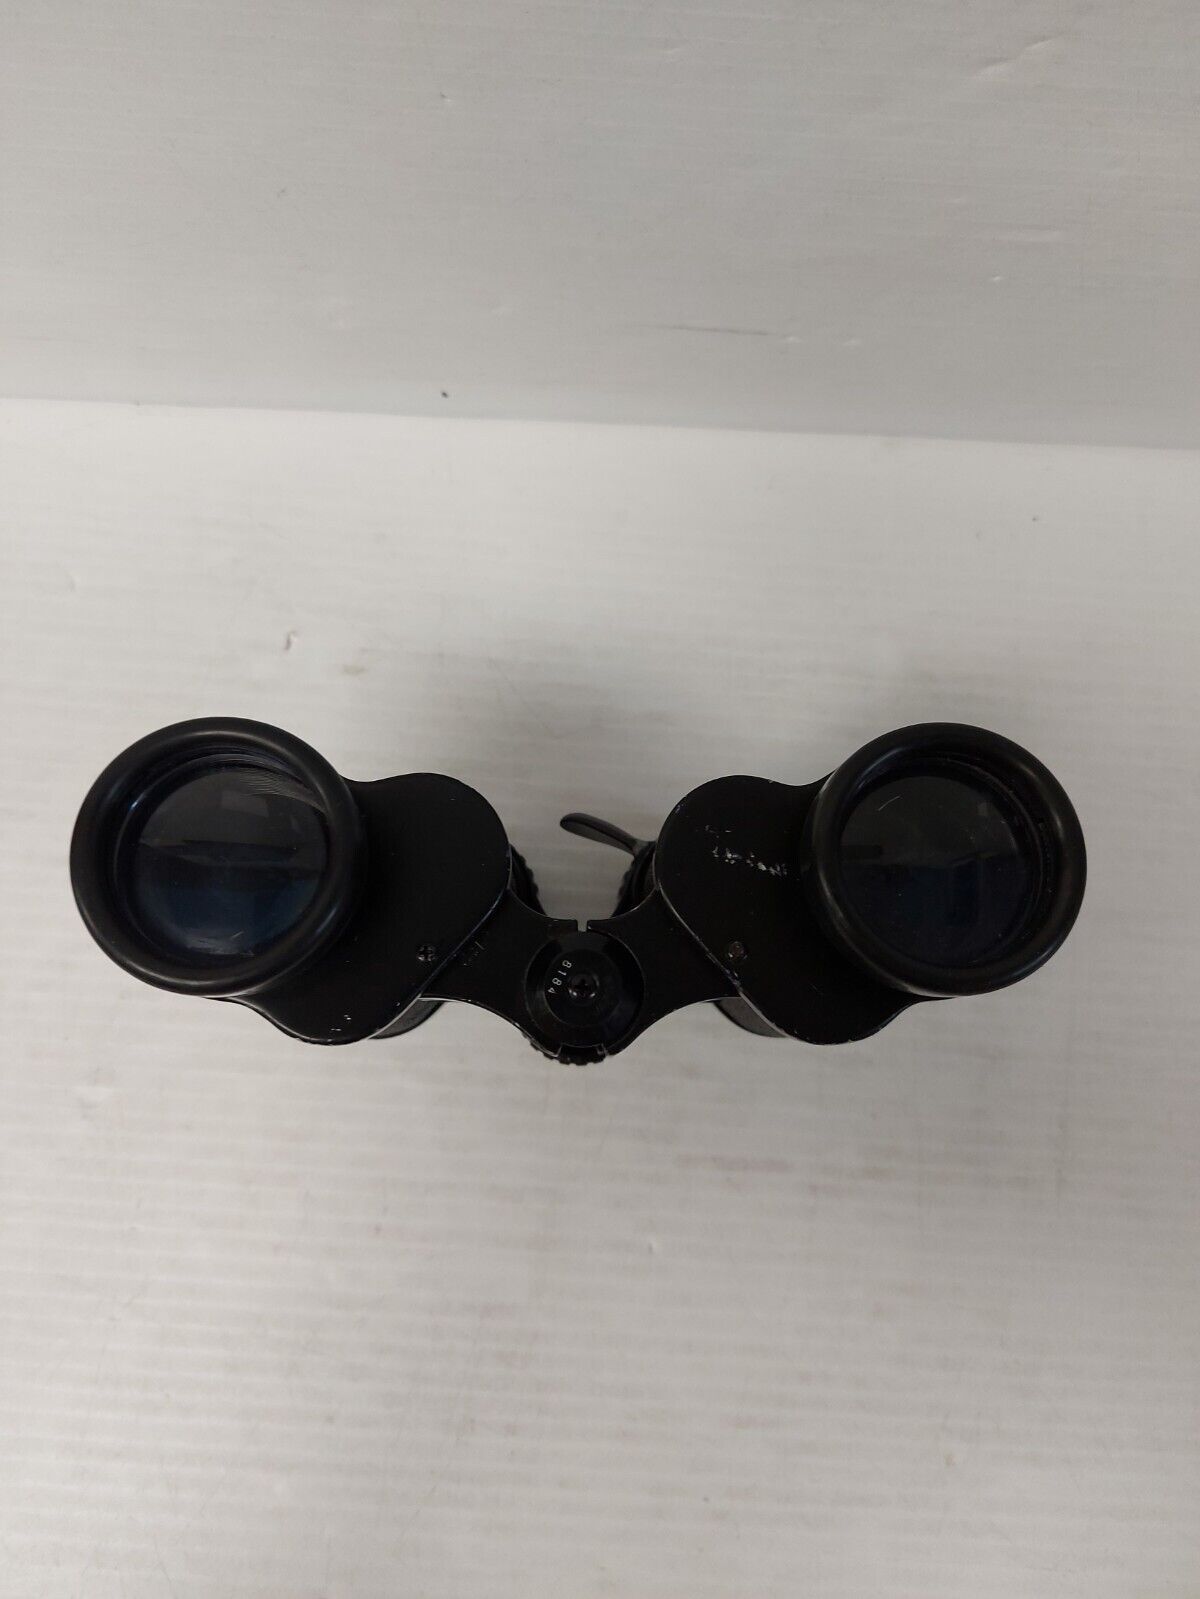 (N82035-1) Tasco 101C 7x-15x35 Zoom Binoculars